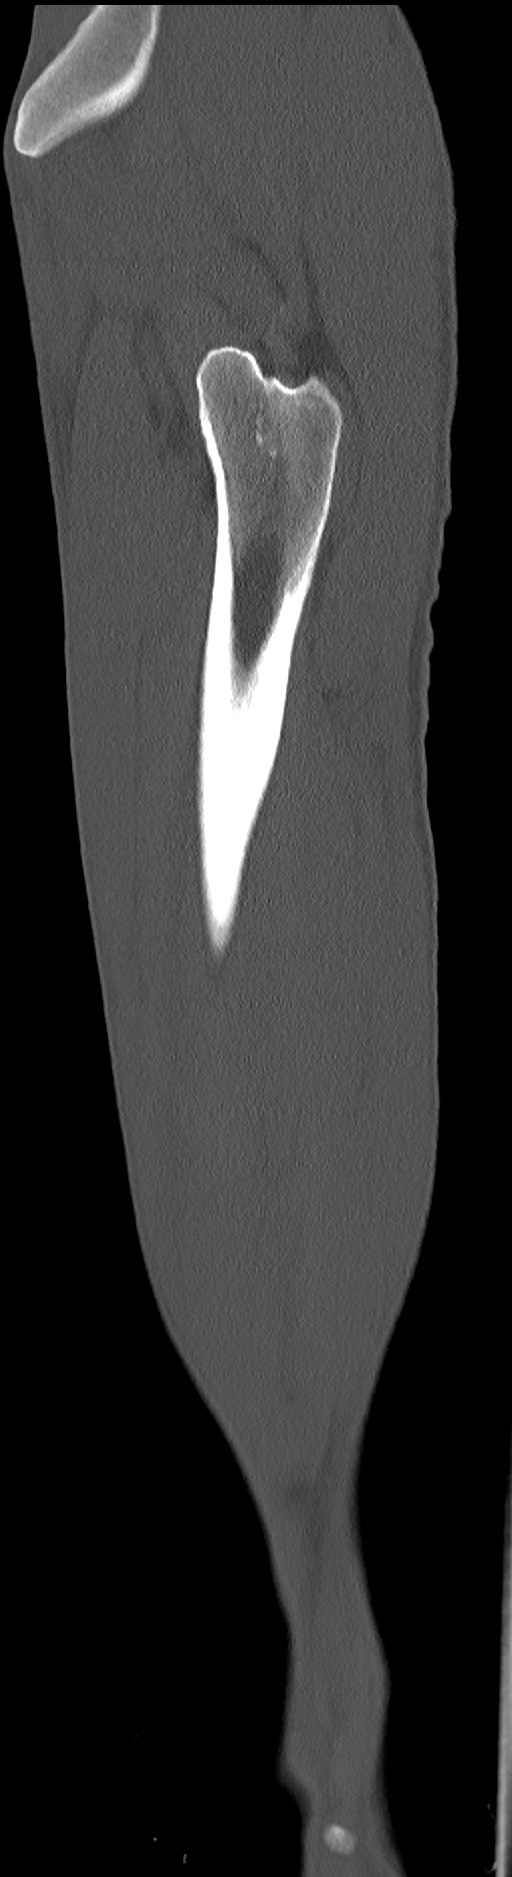 Chronic osteomyelitis (with sequestrum) (Radiopaedia 74813-85822 C 20).jpg